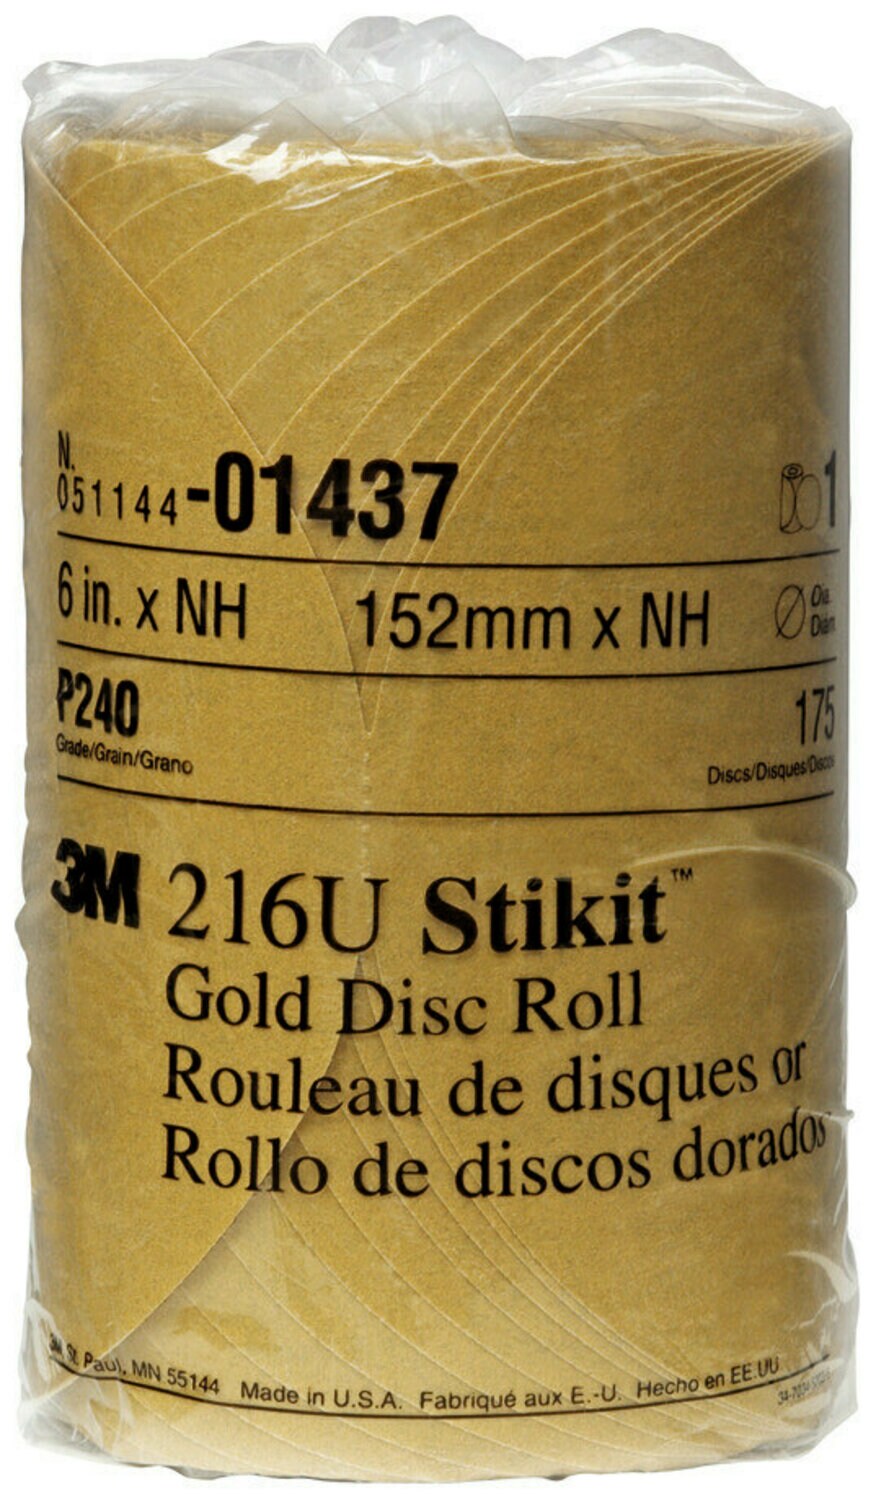 7000119704 - 3M Stikit Gold Disc Roll, 01437, 6 in, P240, 175 discs per roll, 6
rolls per case